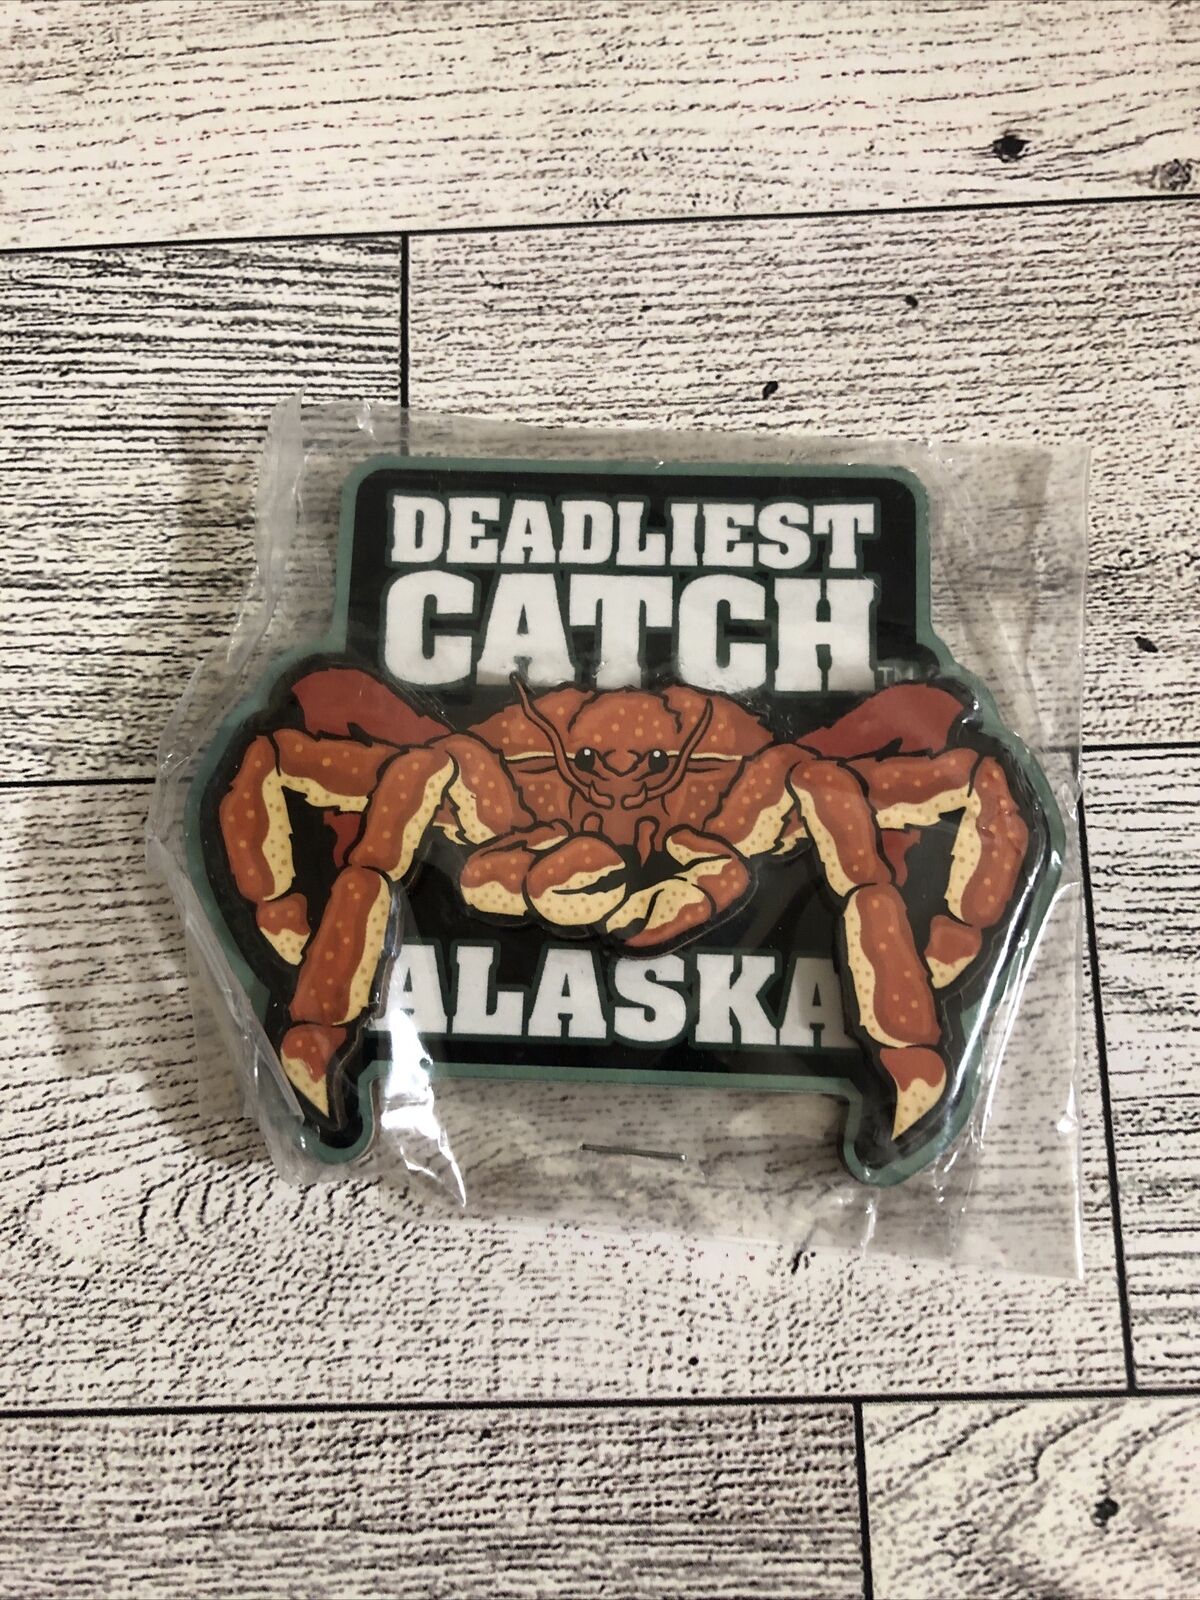 Alaska Magnet Deadliest Catch King Crab - NEW - Deadliest Catch Magnet